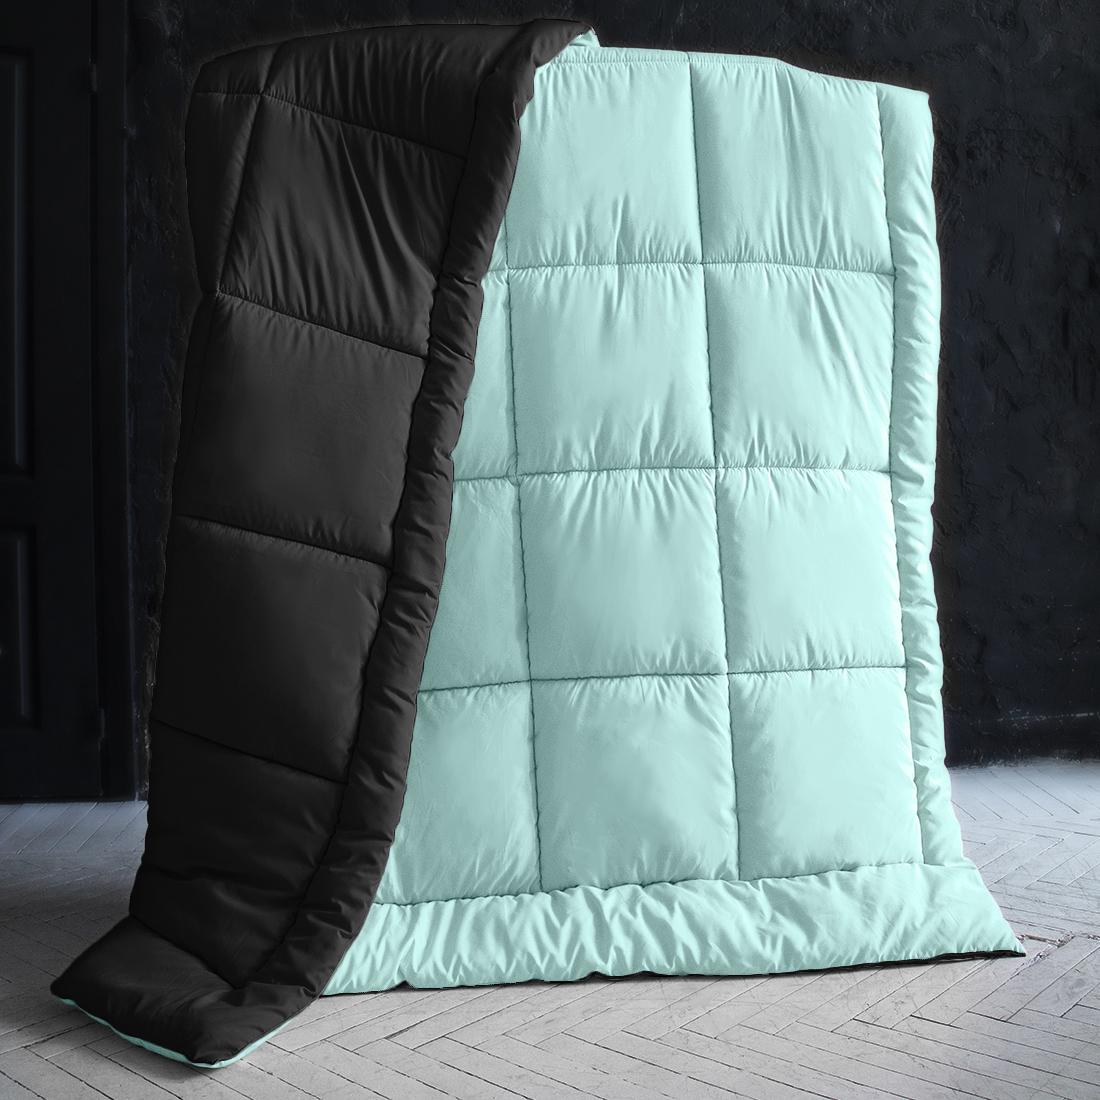 Одеяло MultiColor Цвет: Черный/Нежно-Голубой (155х215 см), размер 155х215 см pva410840 Одеяло MultiColor Цвет: Черный/Нежно-Голубой (155х215 см) - фото 1